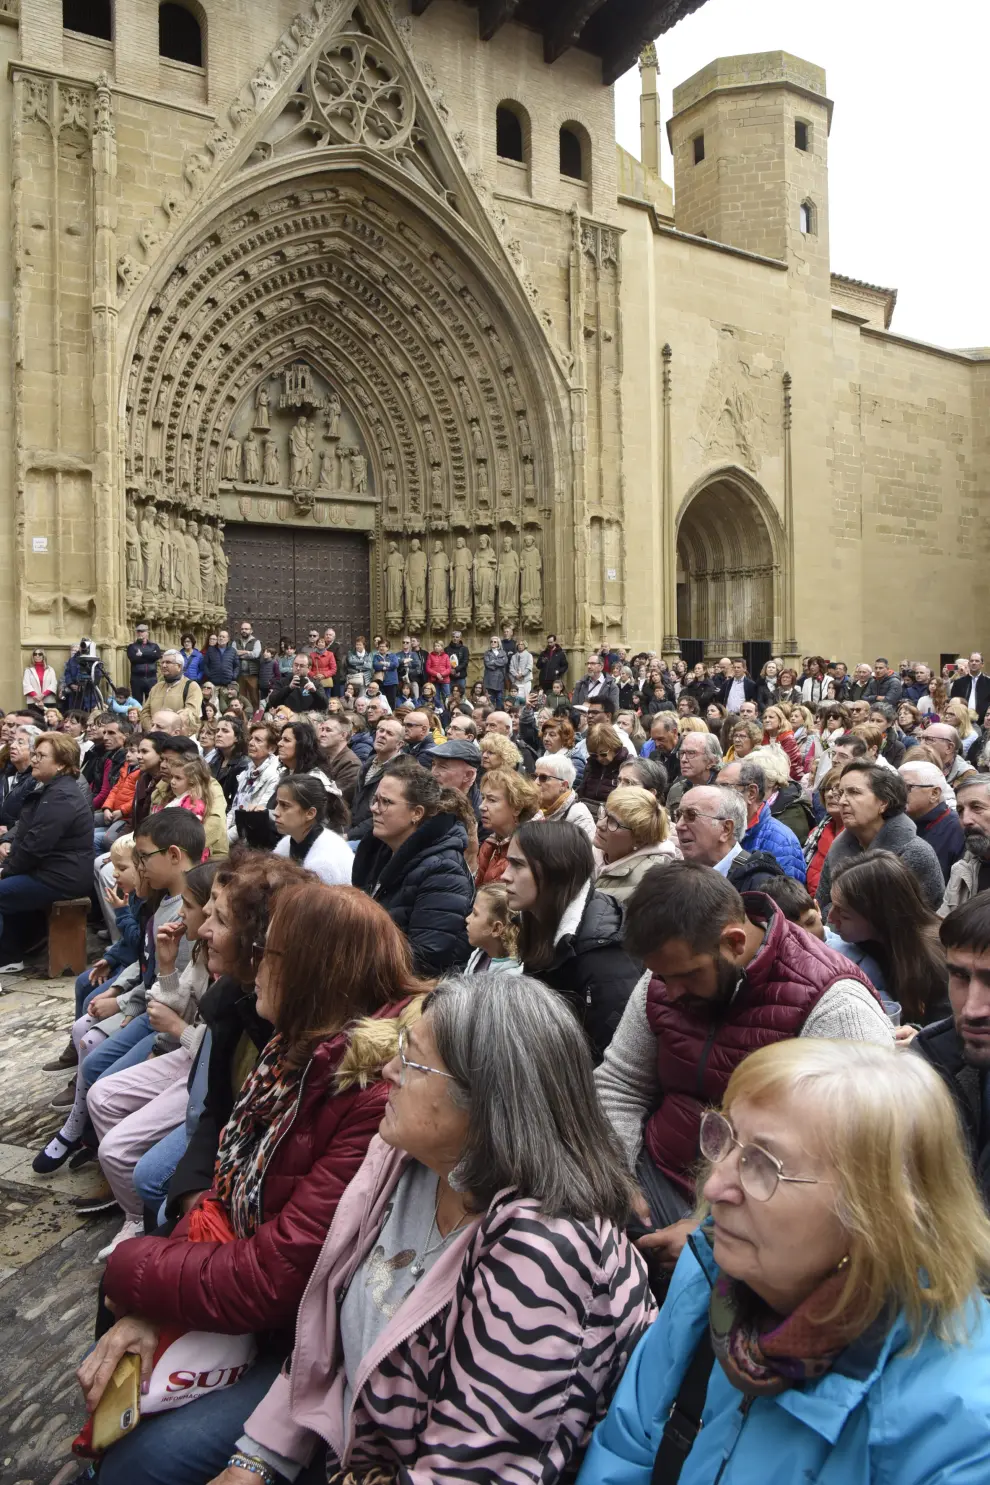 Cientos de oscenses asistieron a la representación de la insaculación o extracción de oficios para elegir a los regidores de Huesca entre 1445 y 1707.